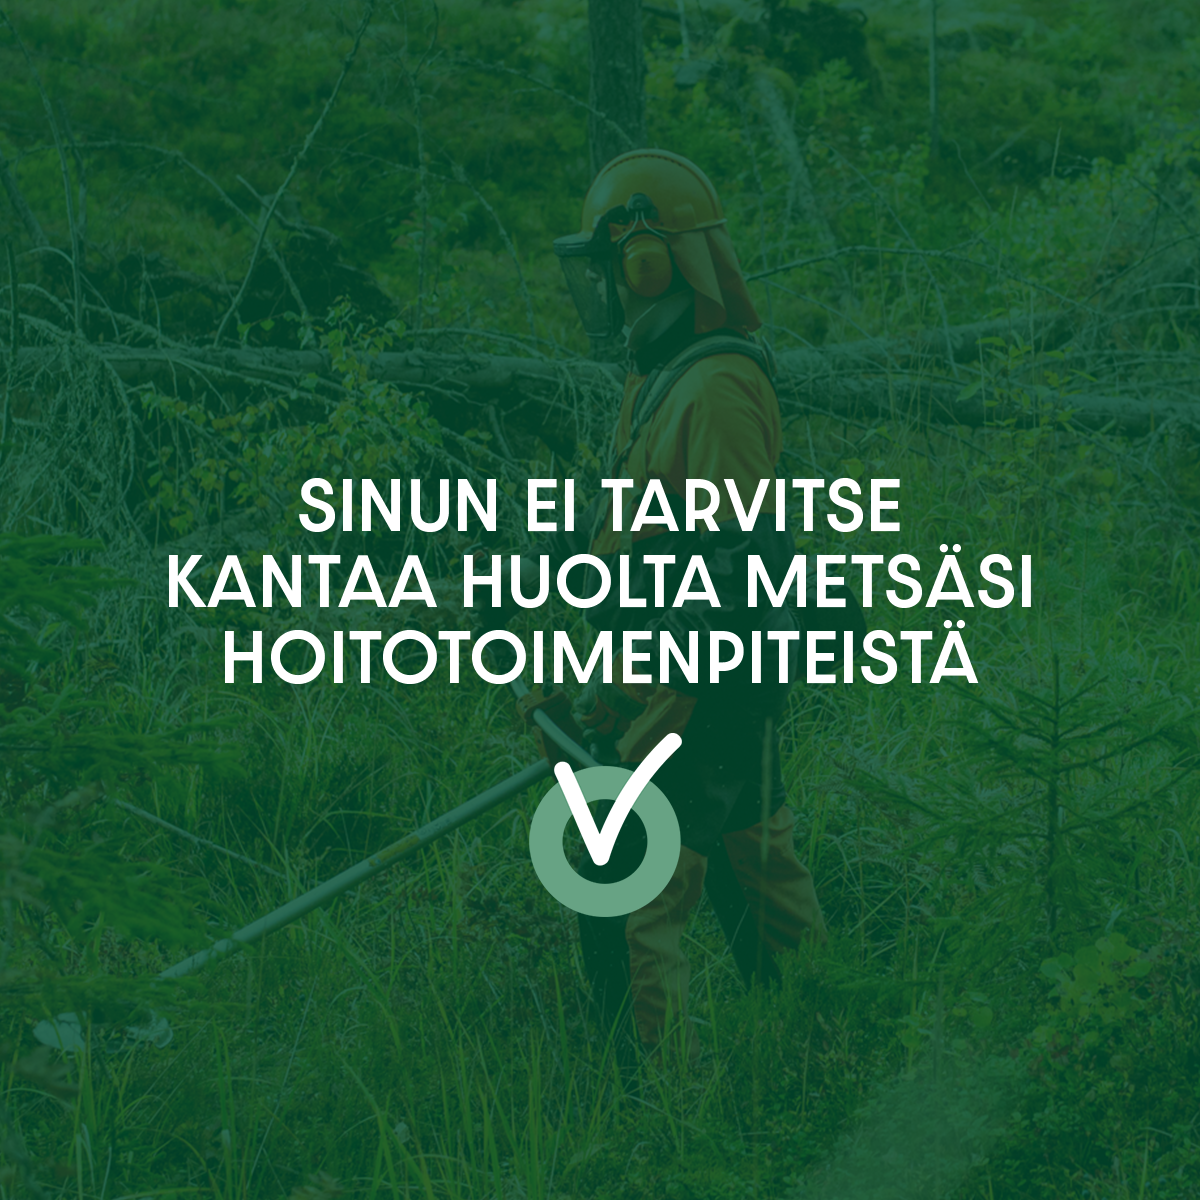 Tornatorin metsuri työskentelemässä metsässä raivaussahalla: sinun ei tarvitse kantaa huolta metsäsi hoitotoimenpiteistä.